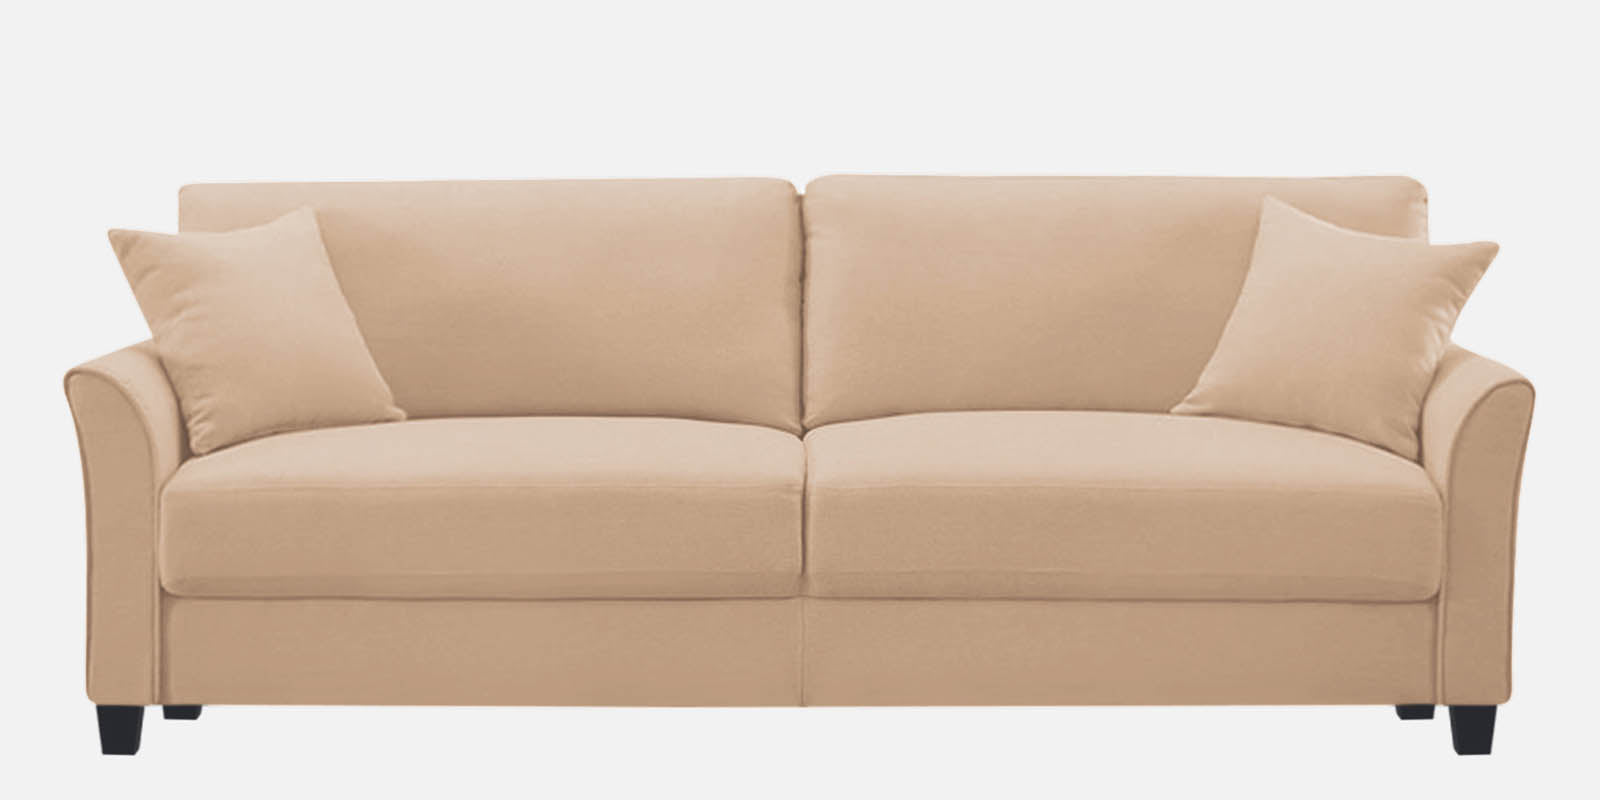 Daroo Velvet 3 Seater Sofa in Camel Beige Colour